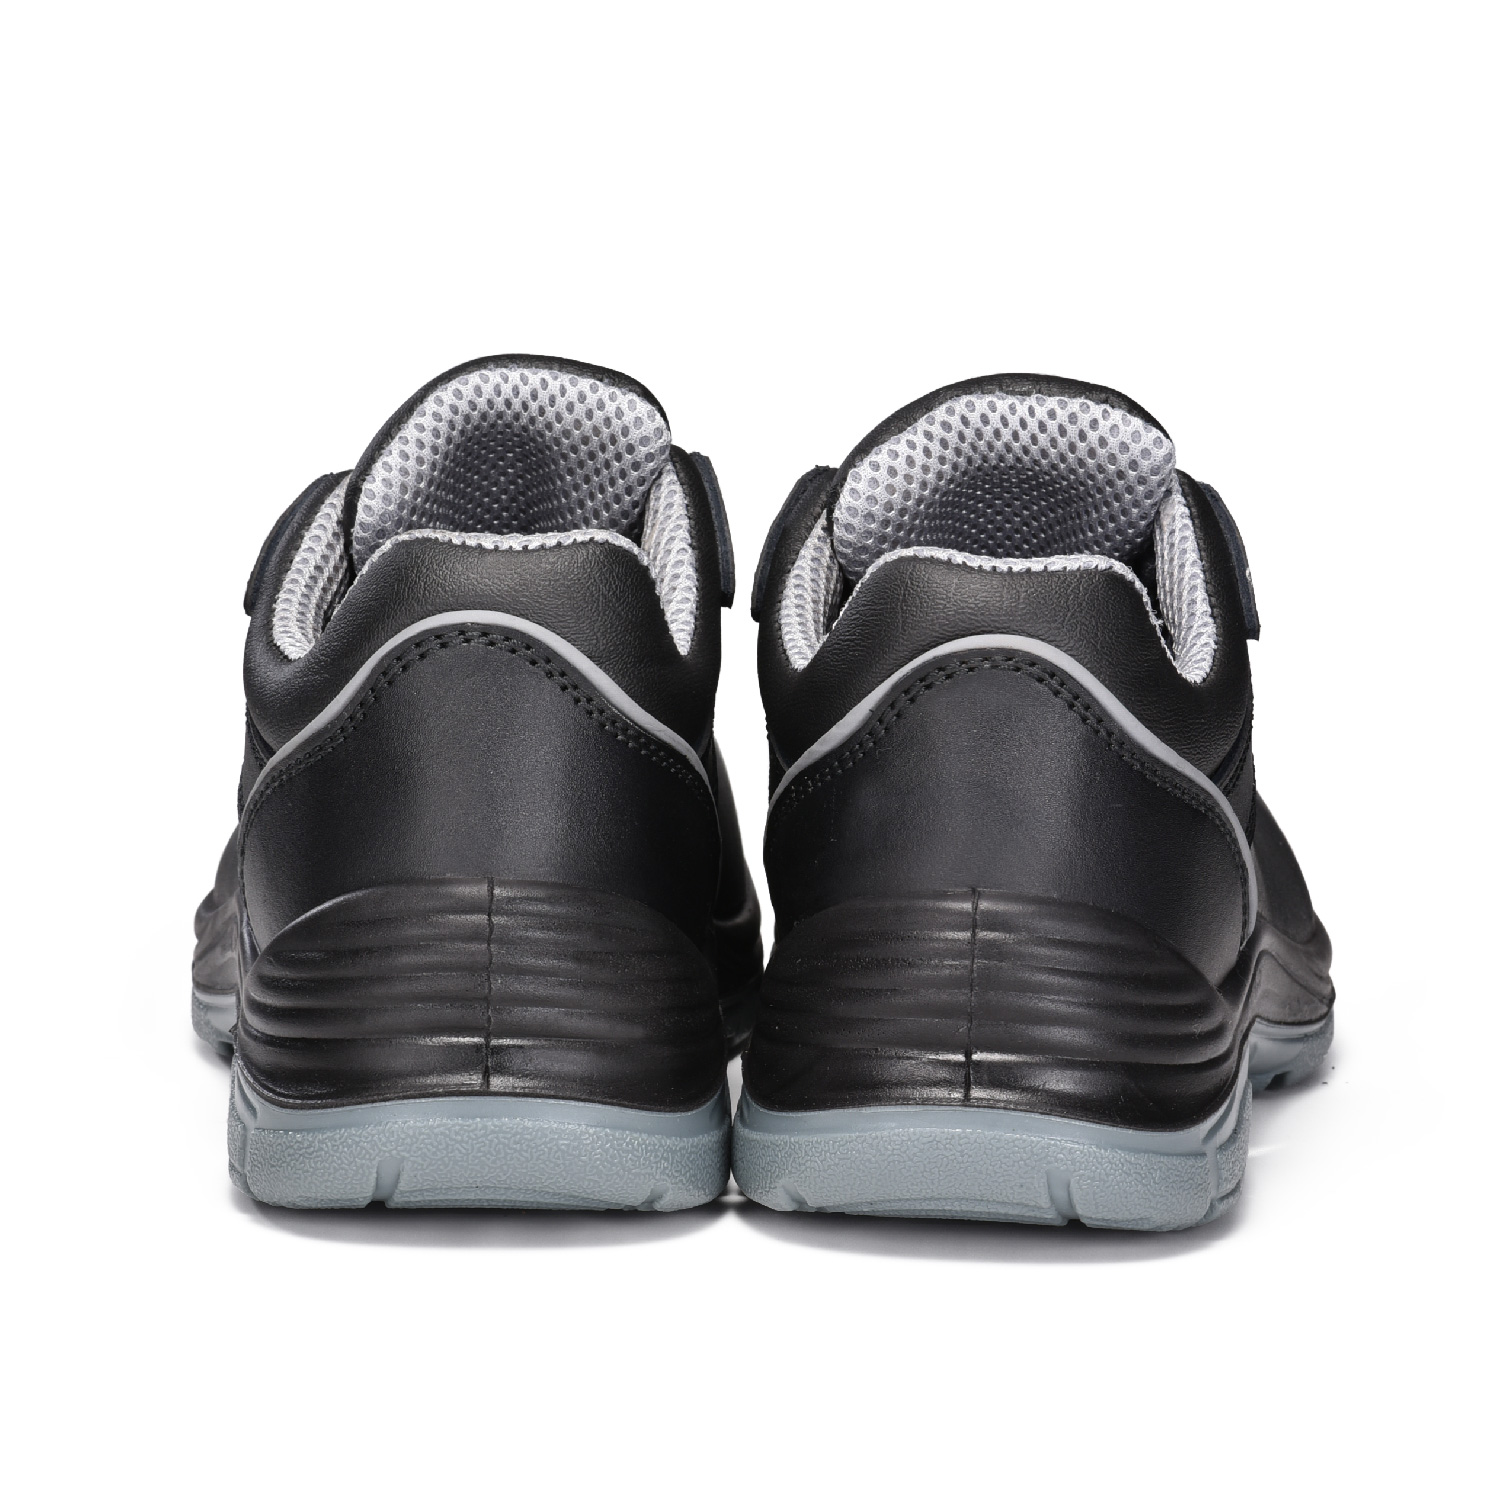 Zapato de Seguridad Industrial S3 de Piel con Puntera de Compuesto L-7522